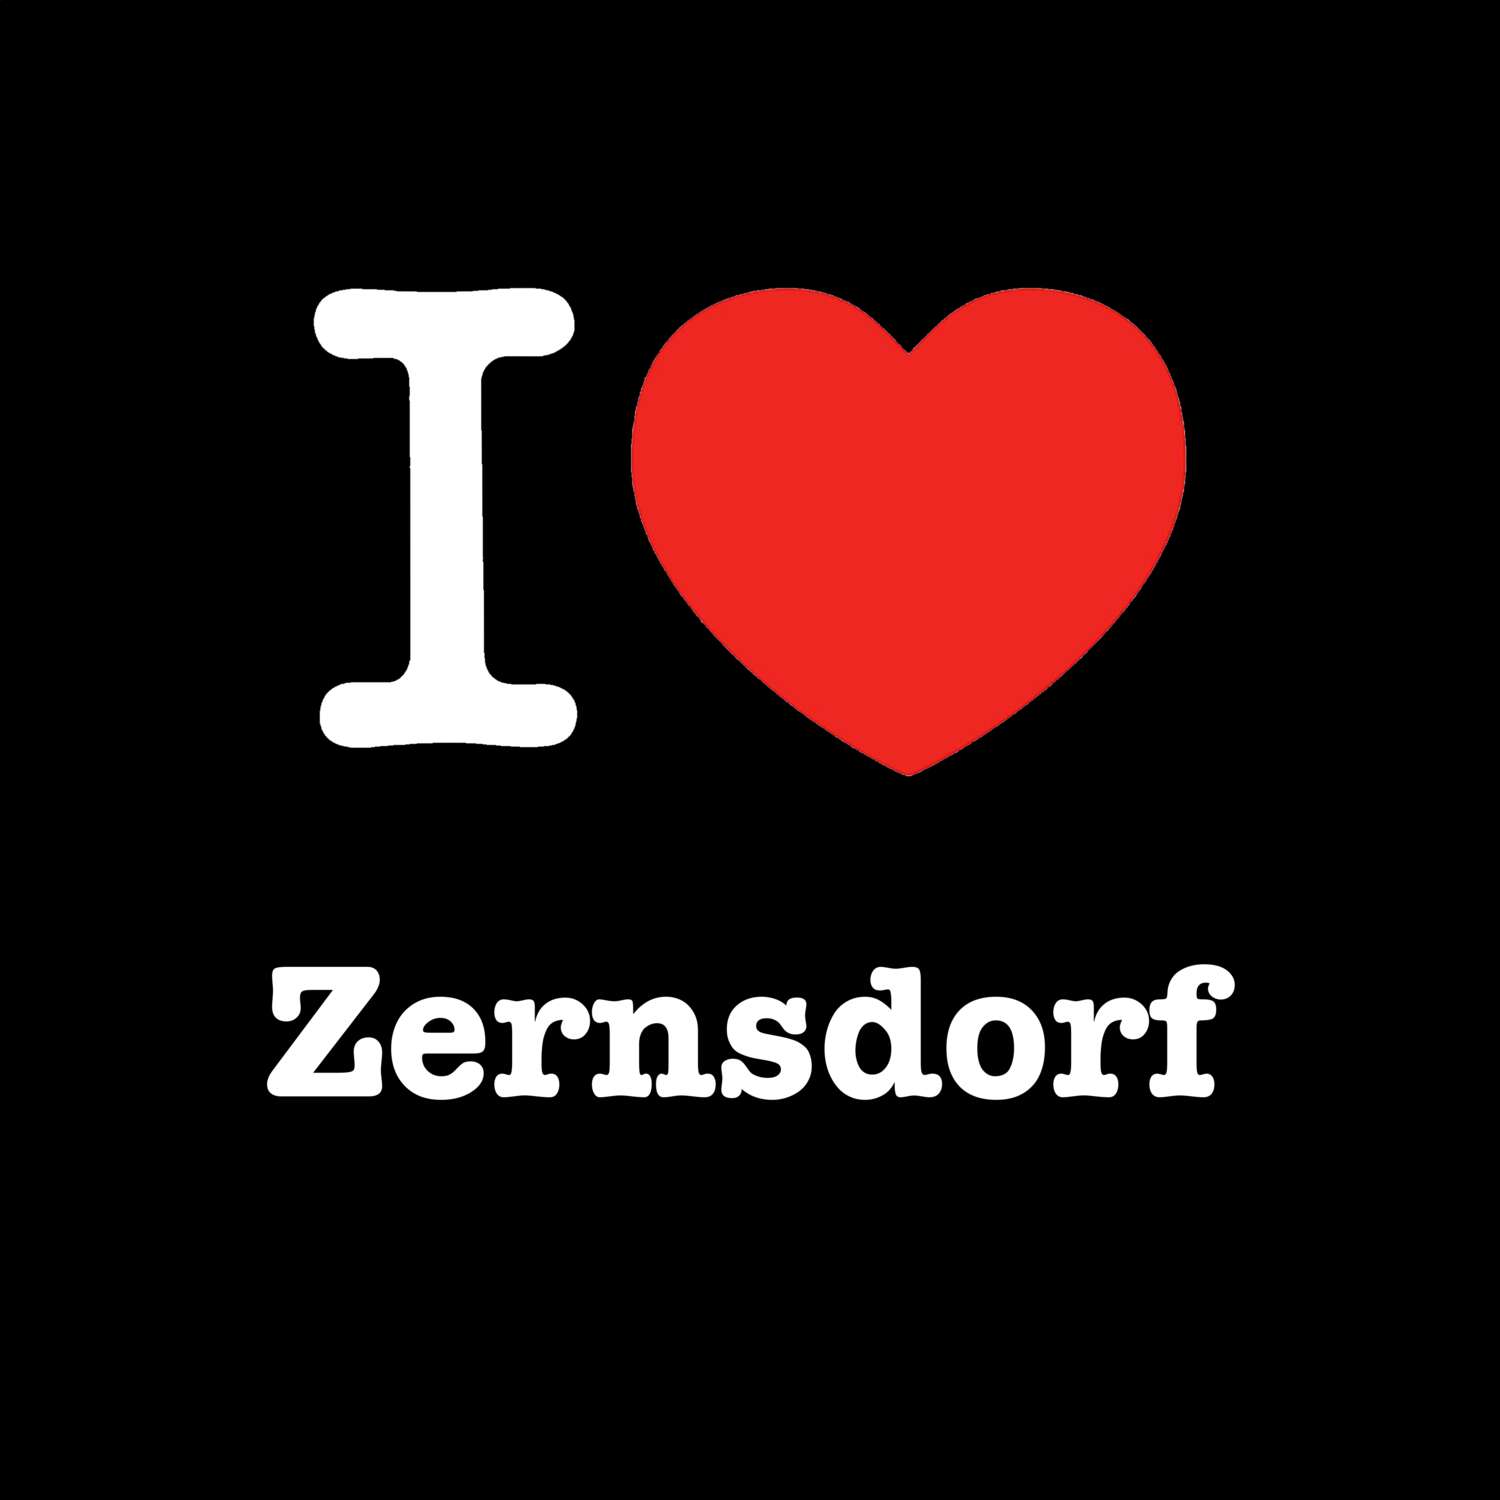 Zernsdorf T-Shirt »I love«